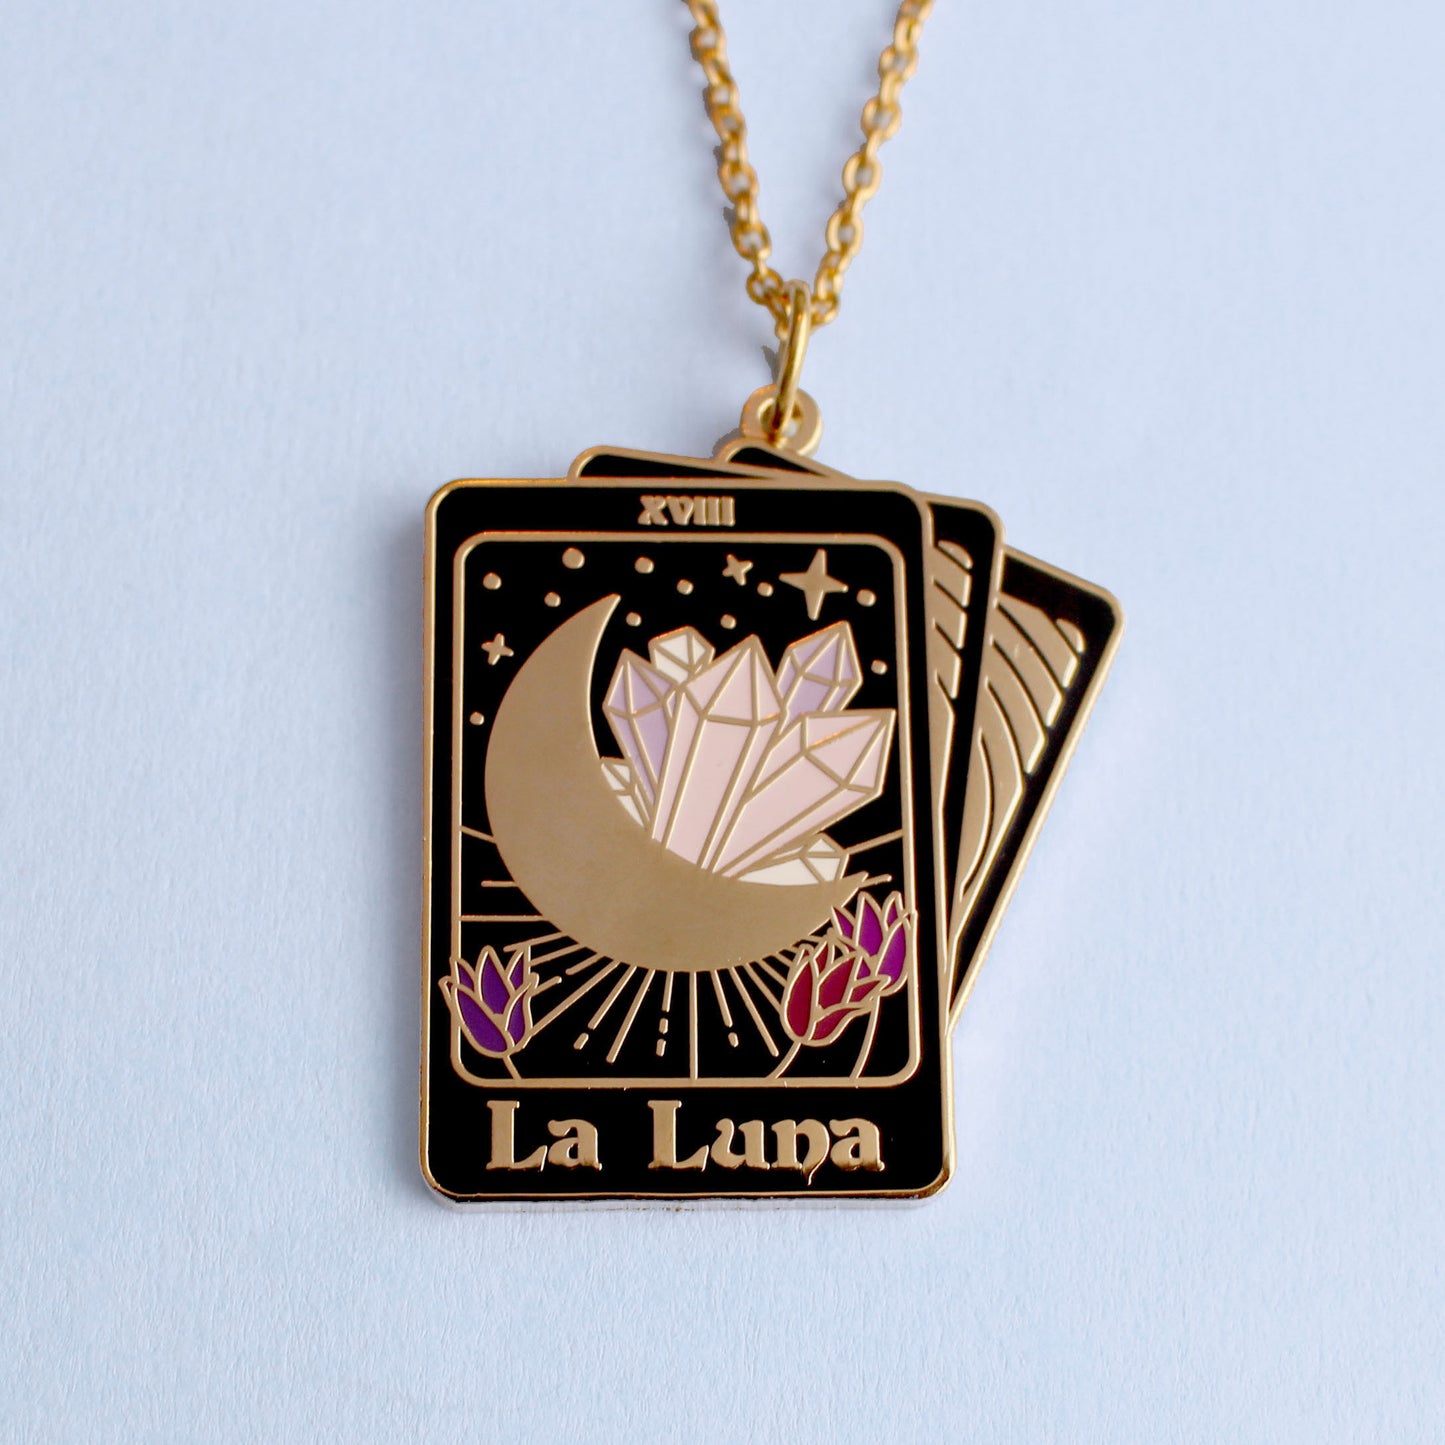 La Luna tarot card necklace